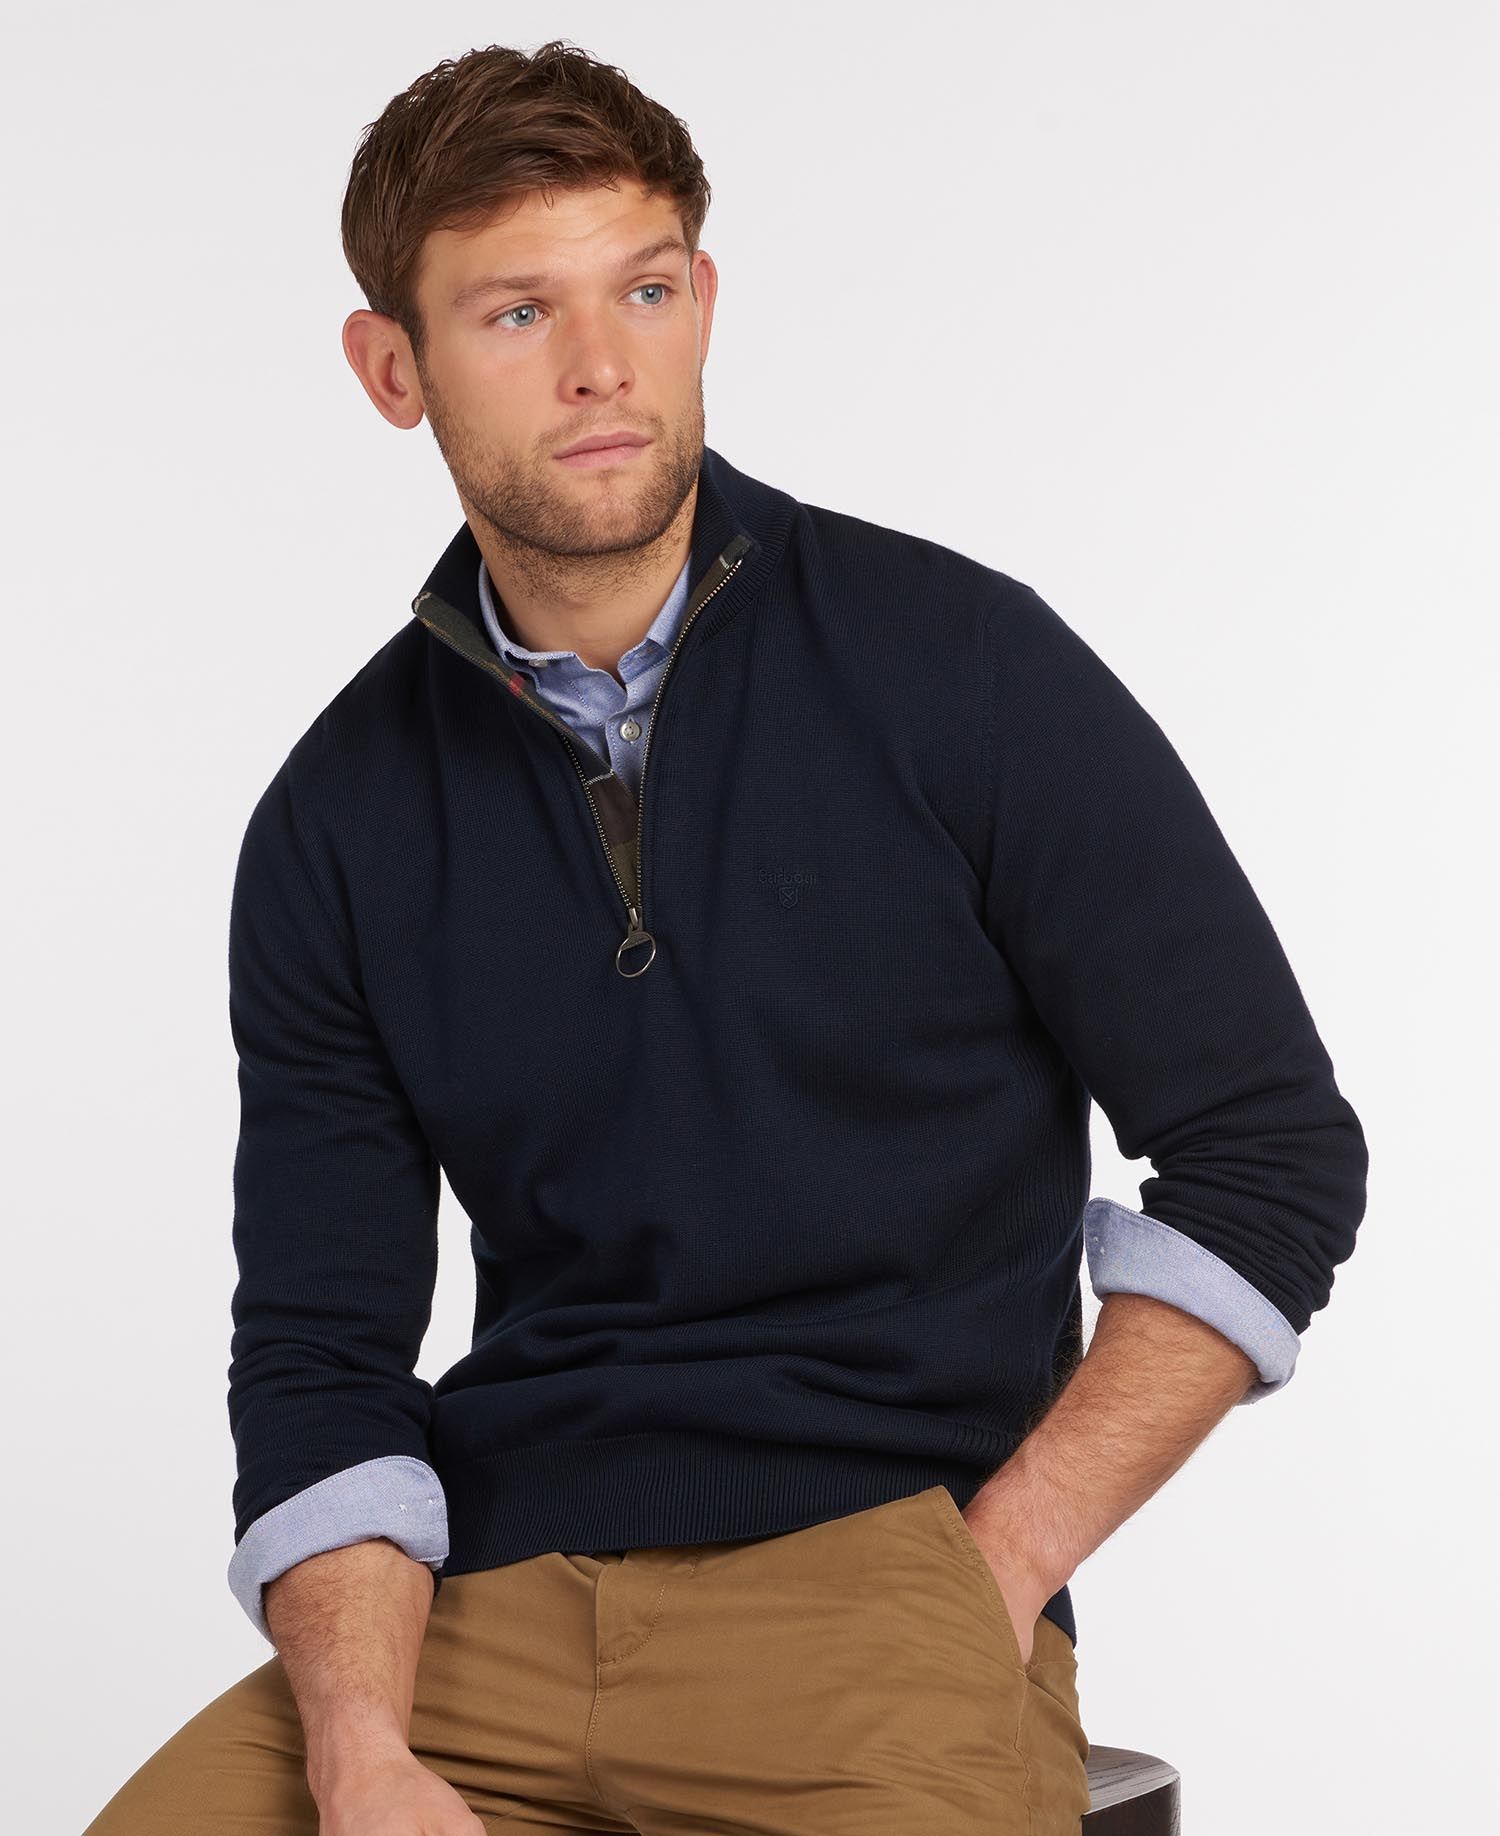 Barbour Men's Cotton Half Zip Sweater - Navy